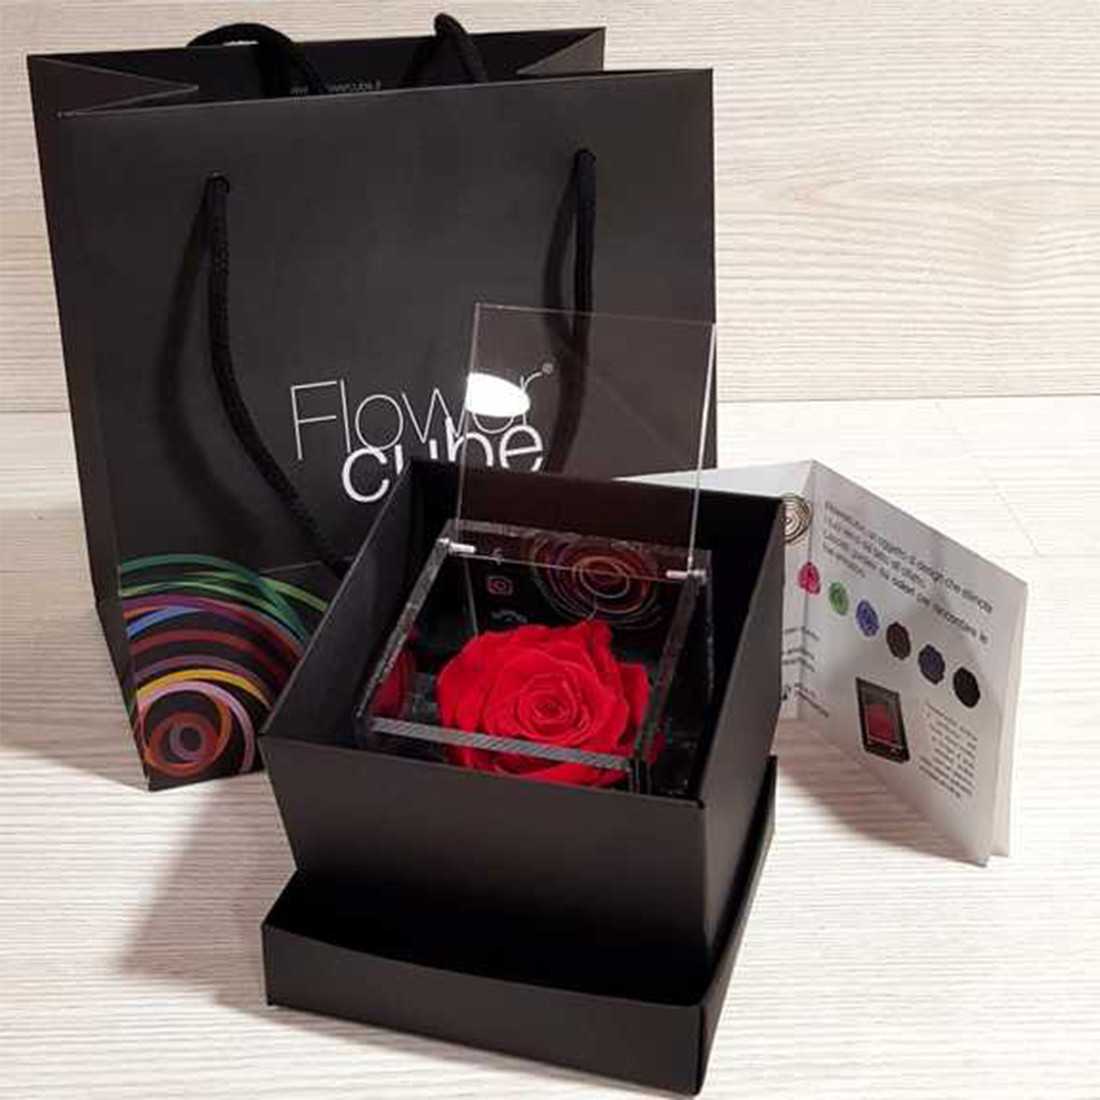 FlowerCube 8x8 cm shop online